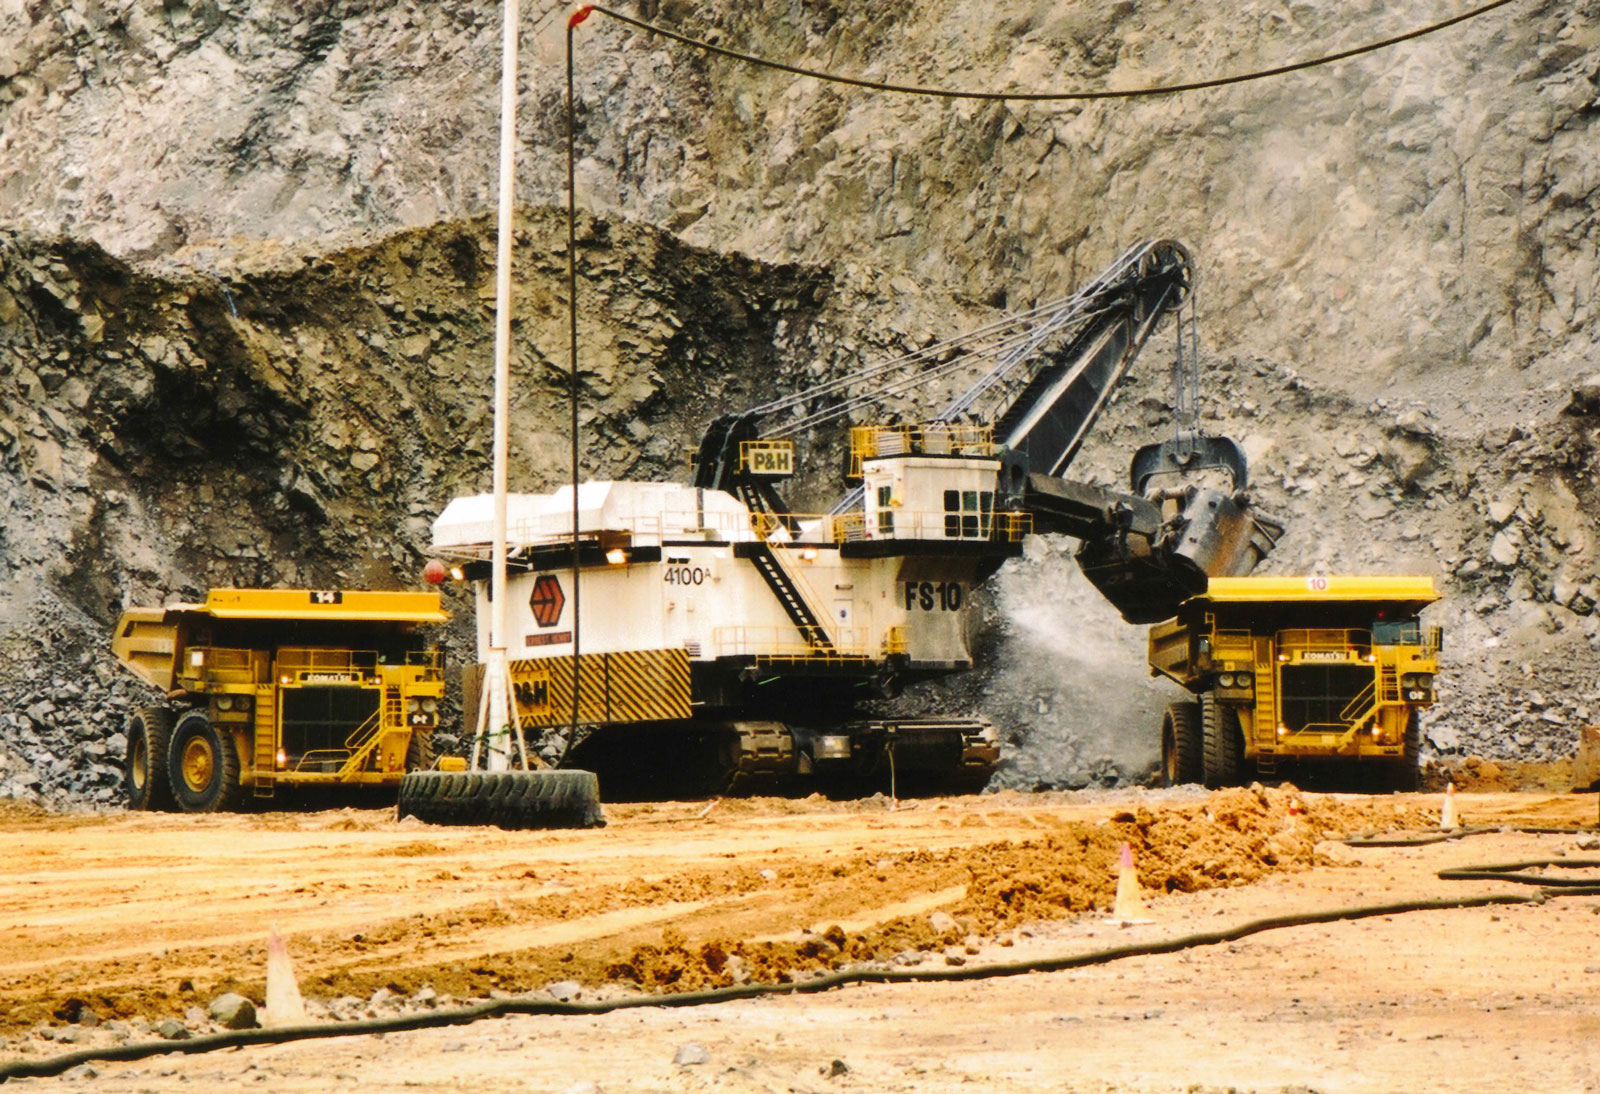 [Mining at Ernest Henry, Queensland]